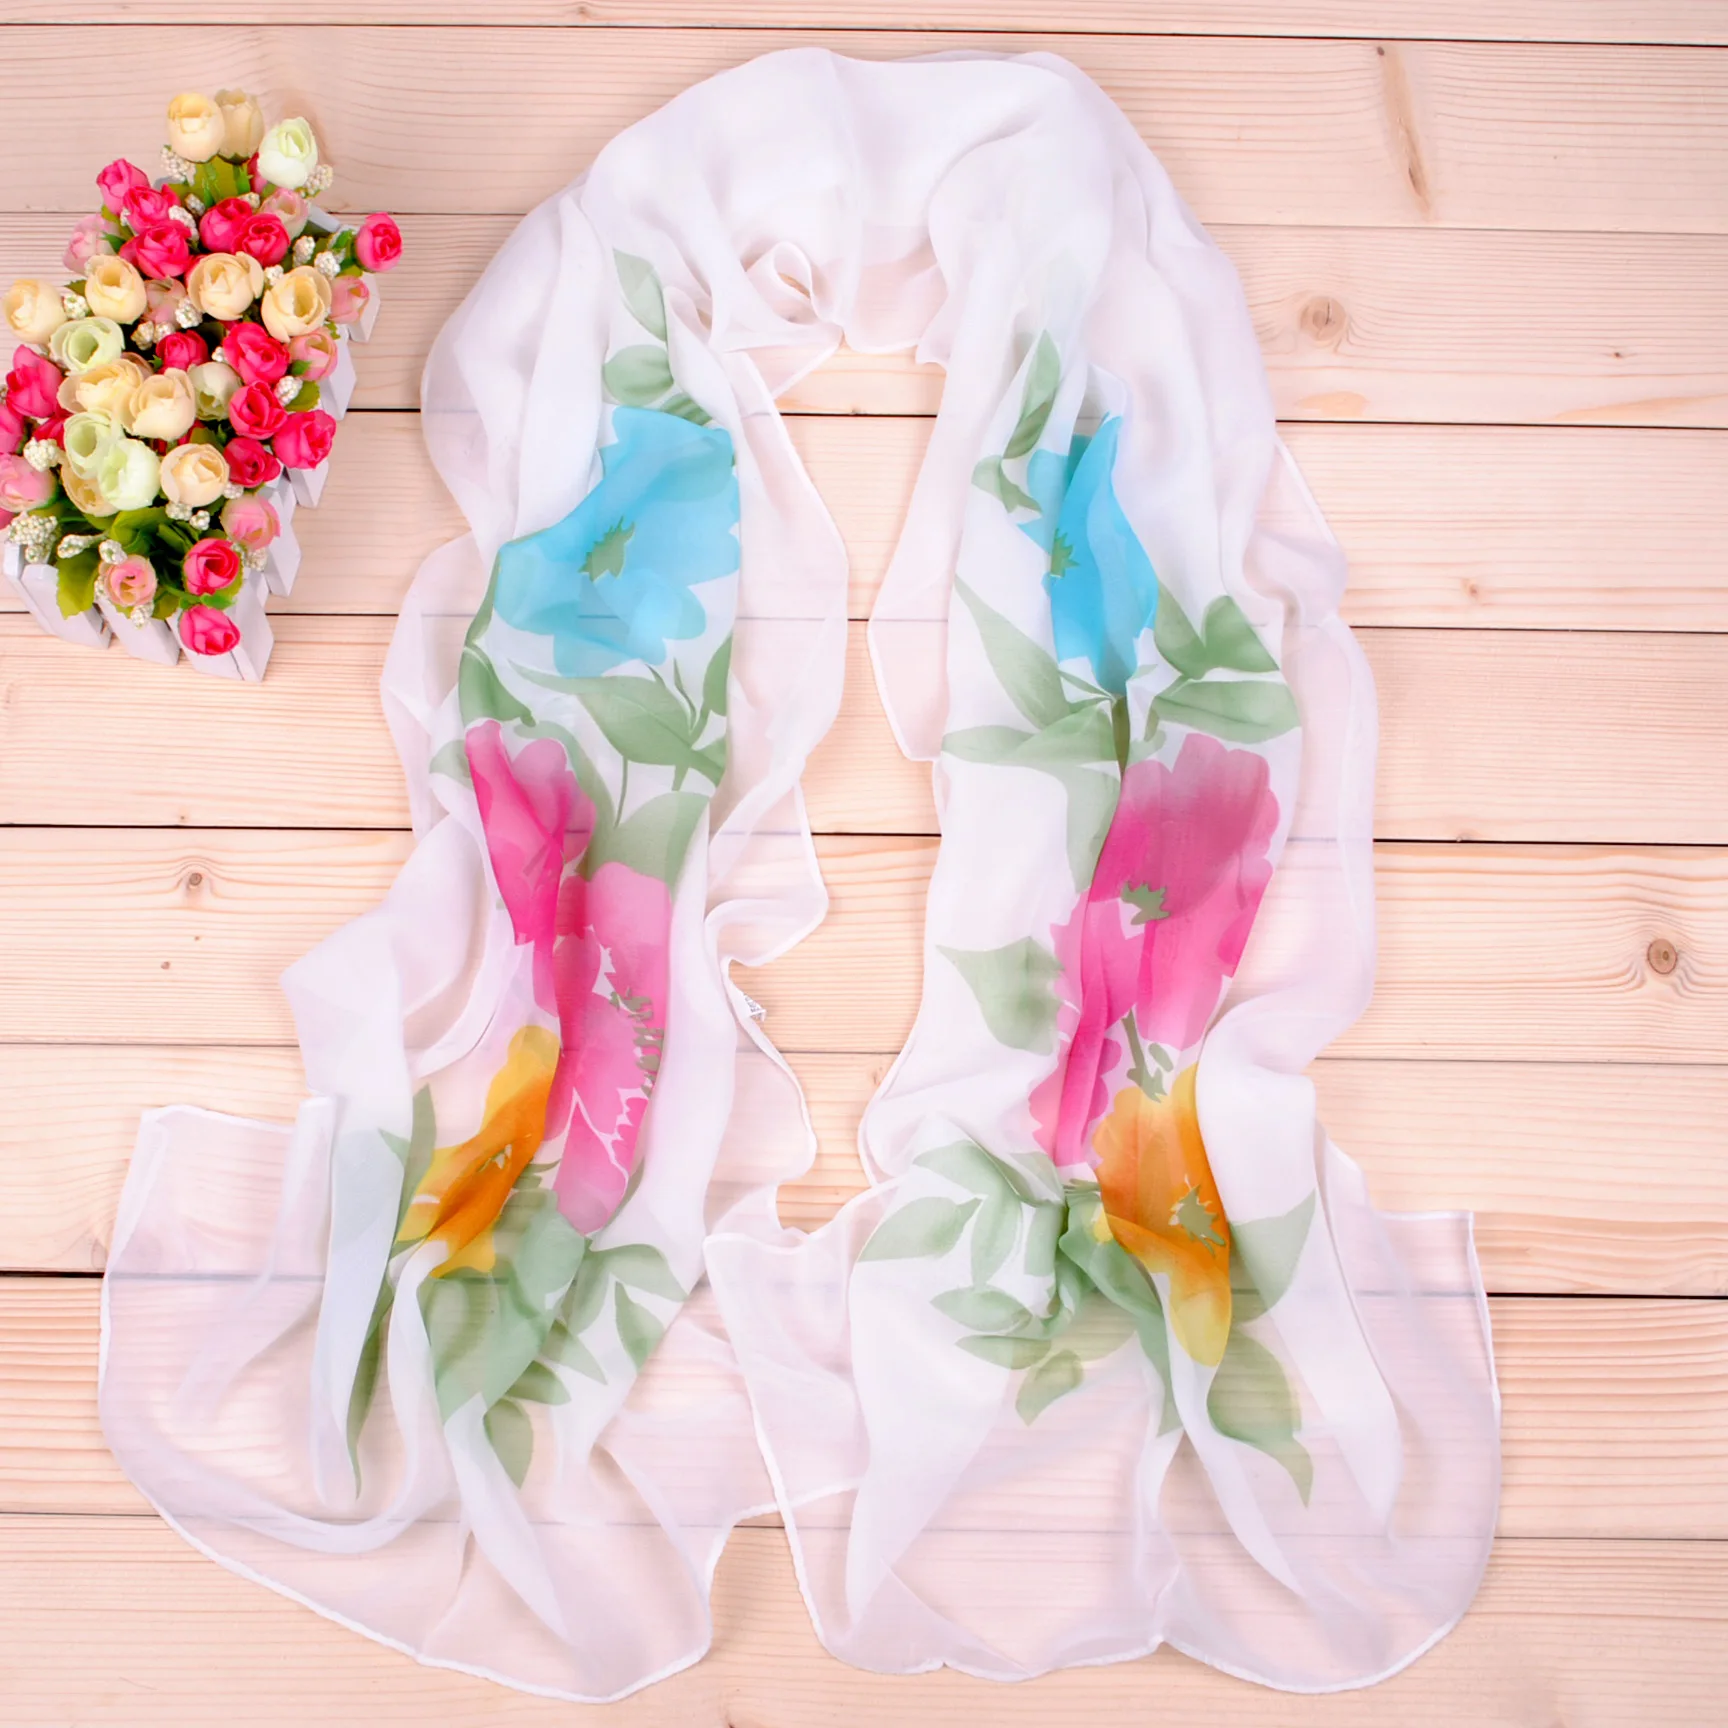 2019 новый бренд женский шарф модный полый вышивка шелковые шарфы женские шали и обертывания Весна Лето Солнцезащитный пляжный палантины